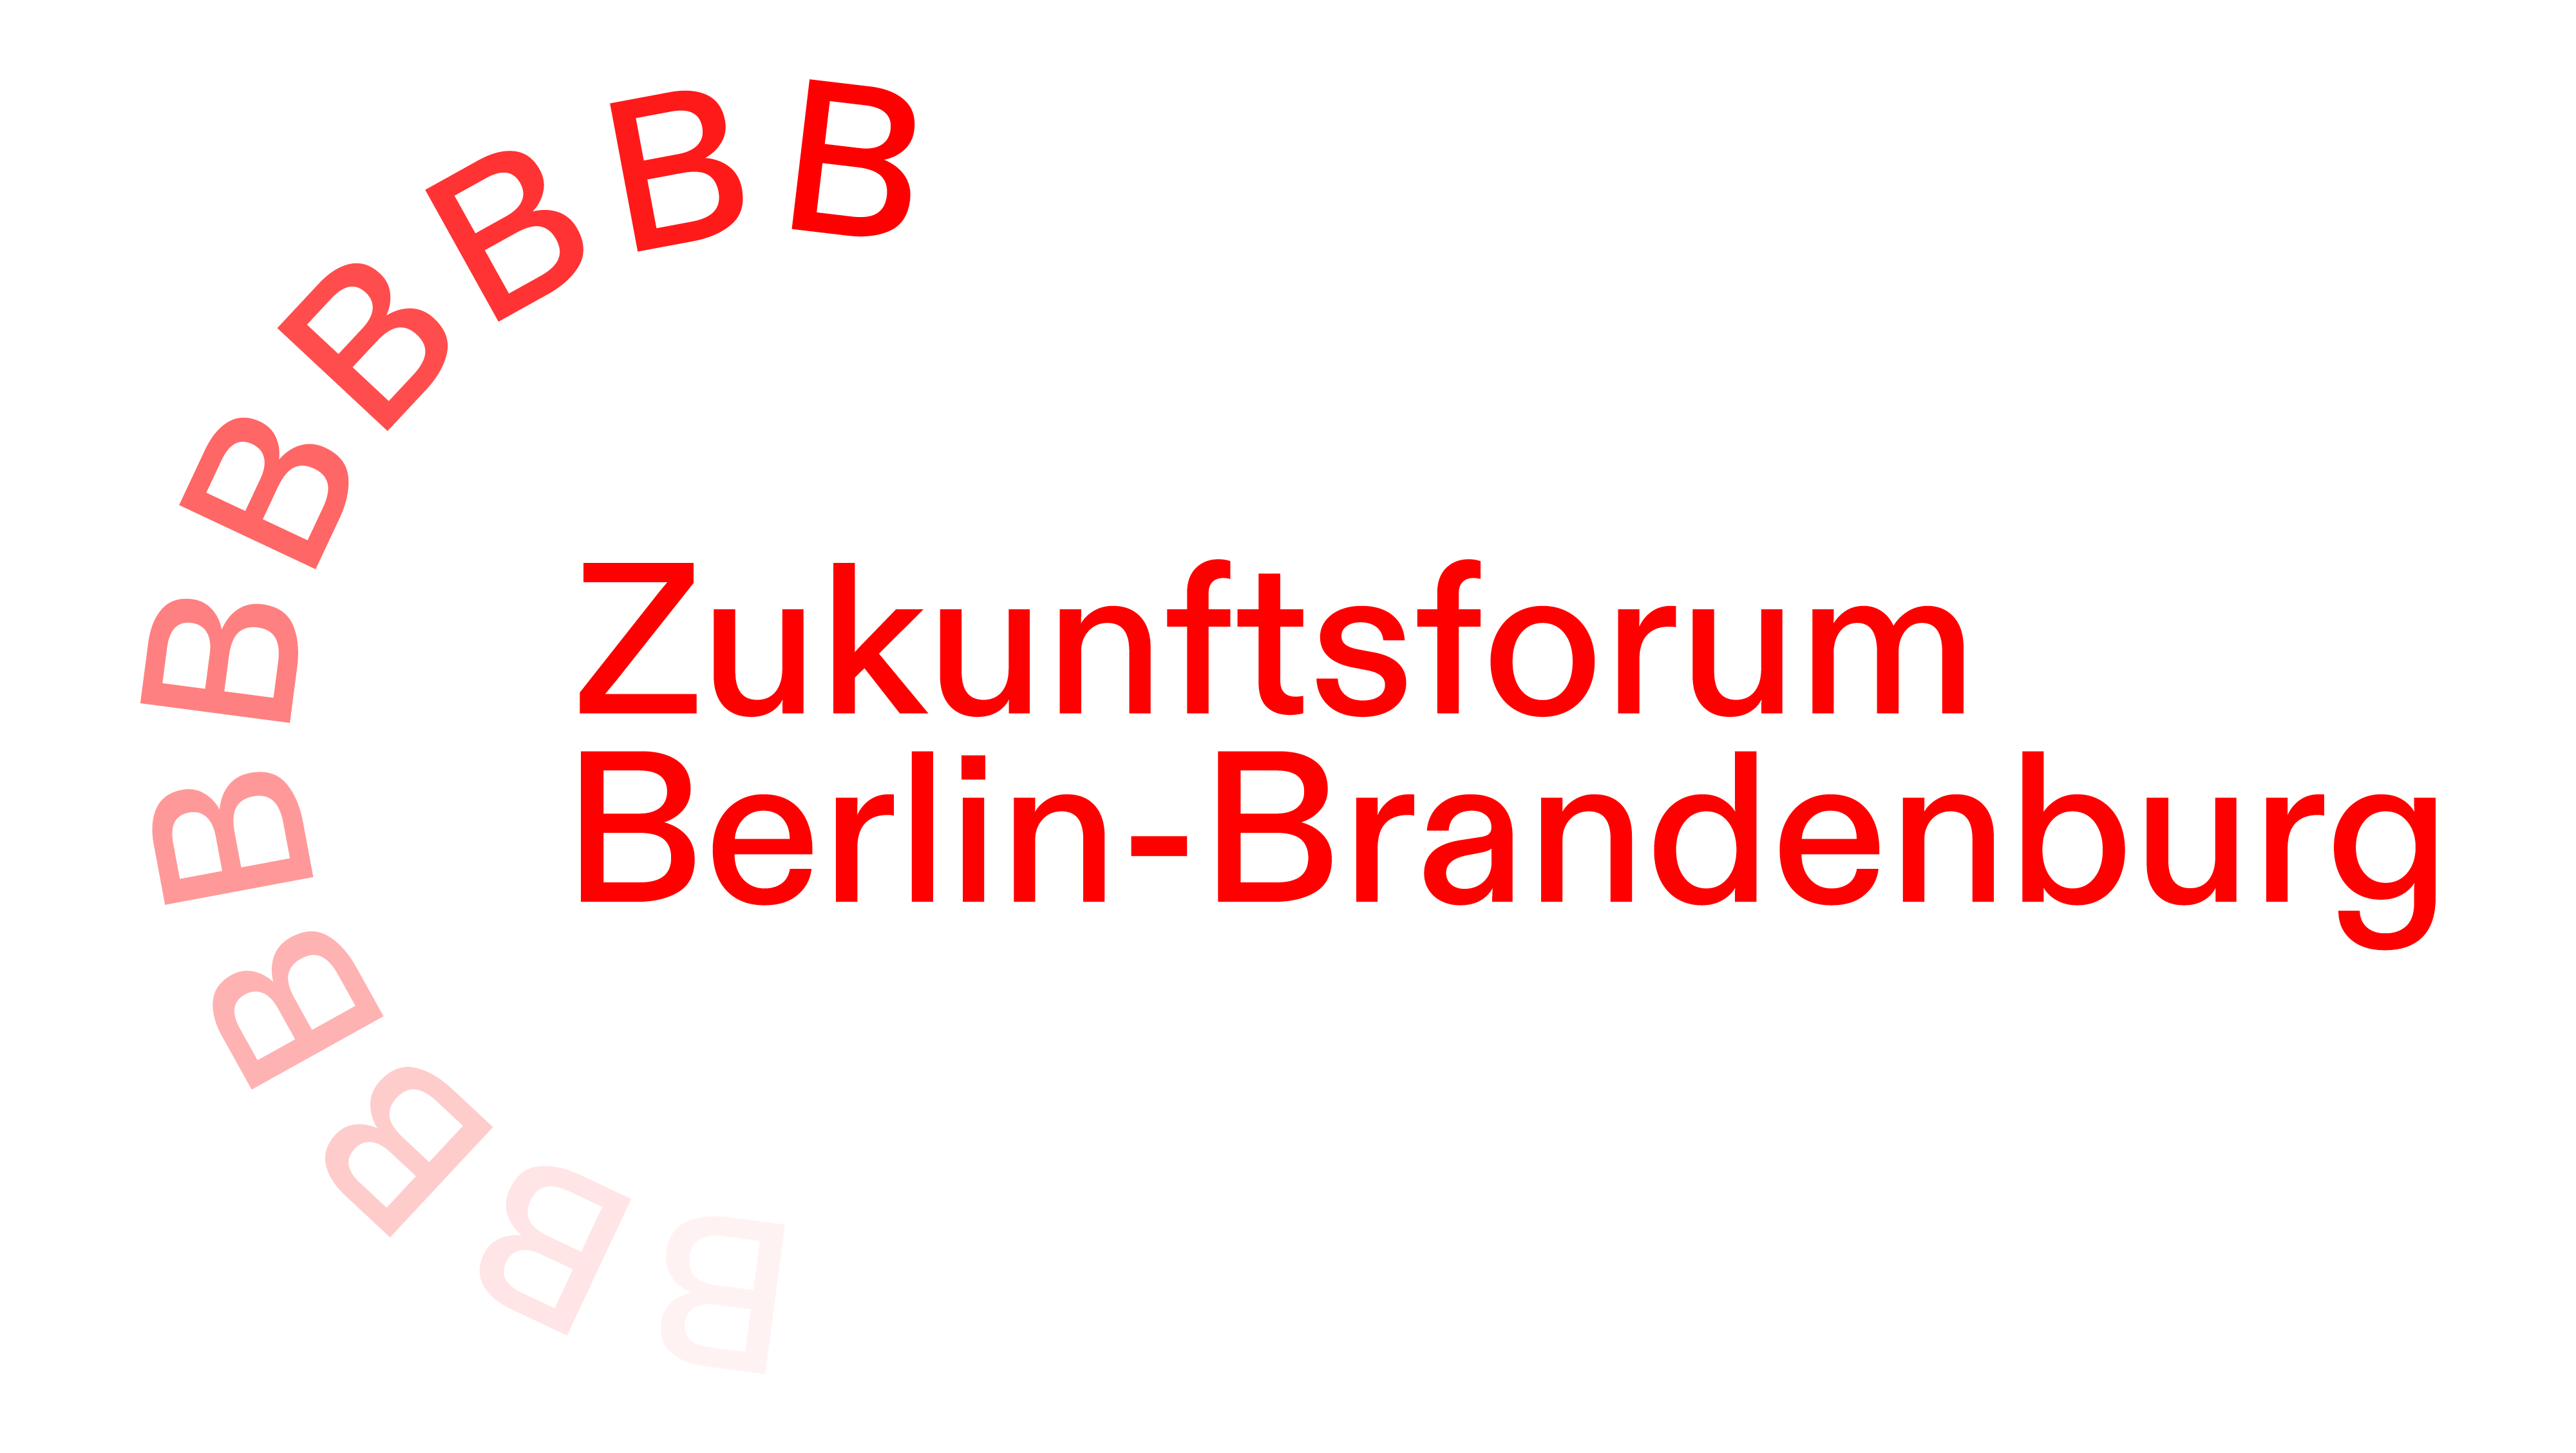 Zukunftsforum Berlin-Brandenburg in Hennigsdorf